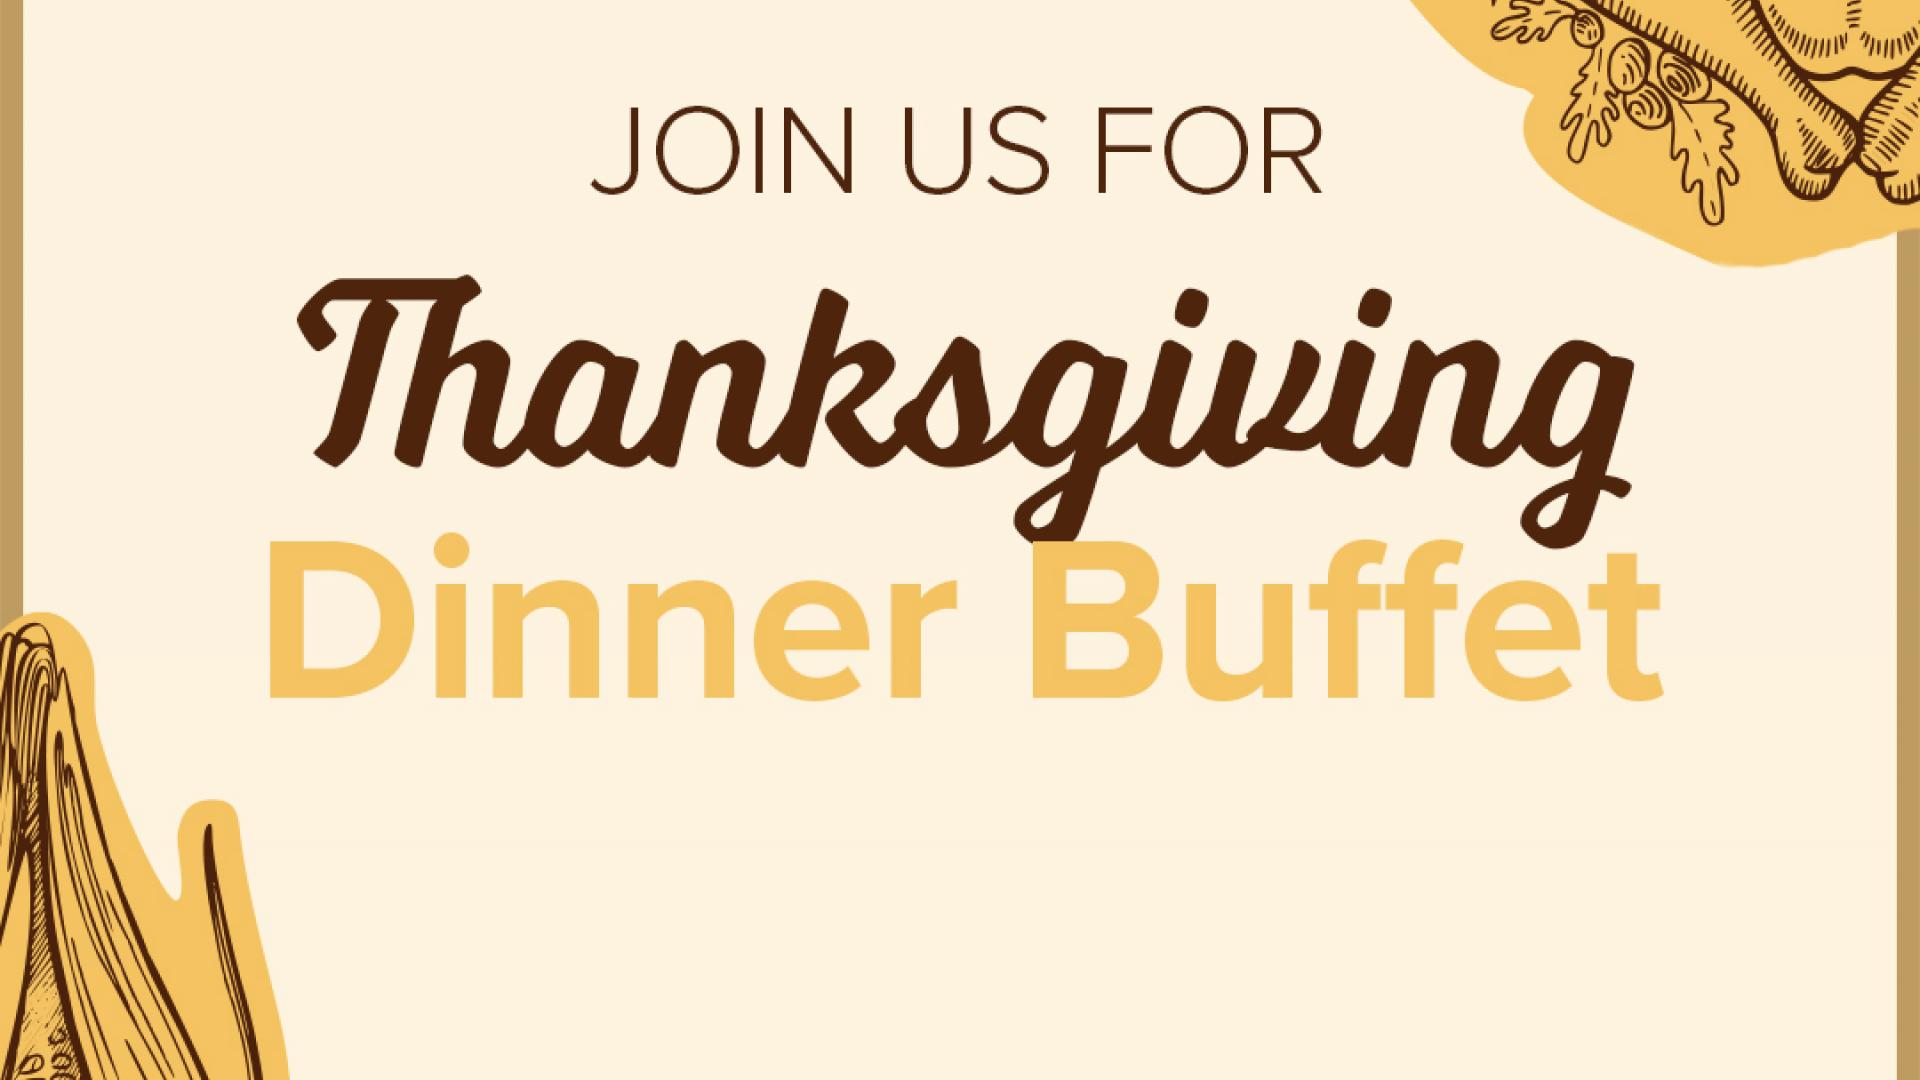 Thanksgiving Shared Dinner Buffet